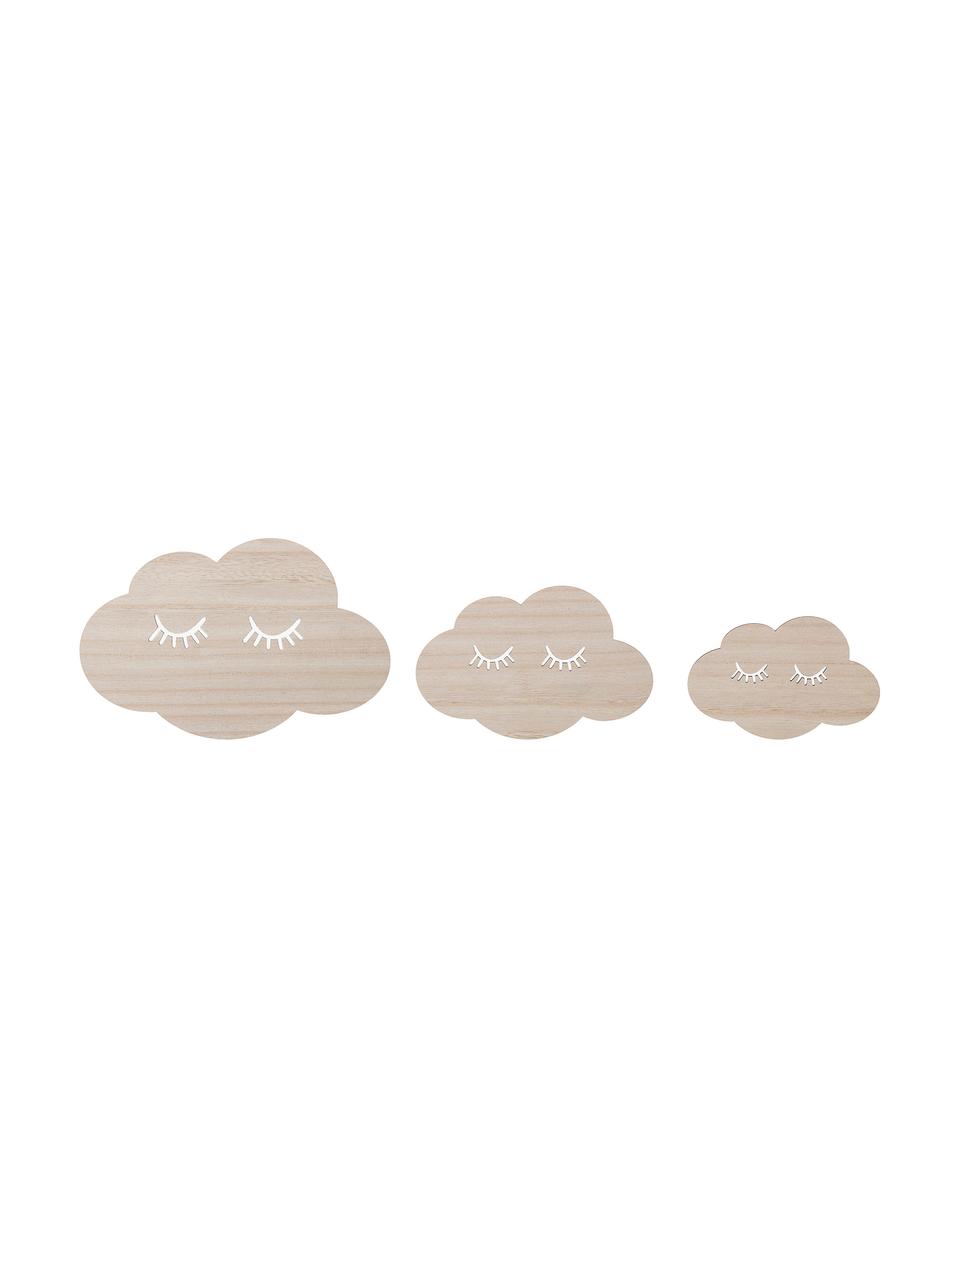 Komplet dekoracji ściennych Clouds, 3 elem., Sklejka, Beżowy, Komplet z różnymi rozmiarami